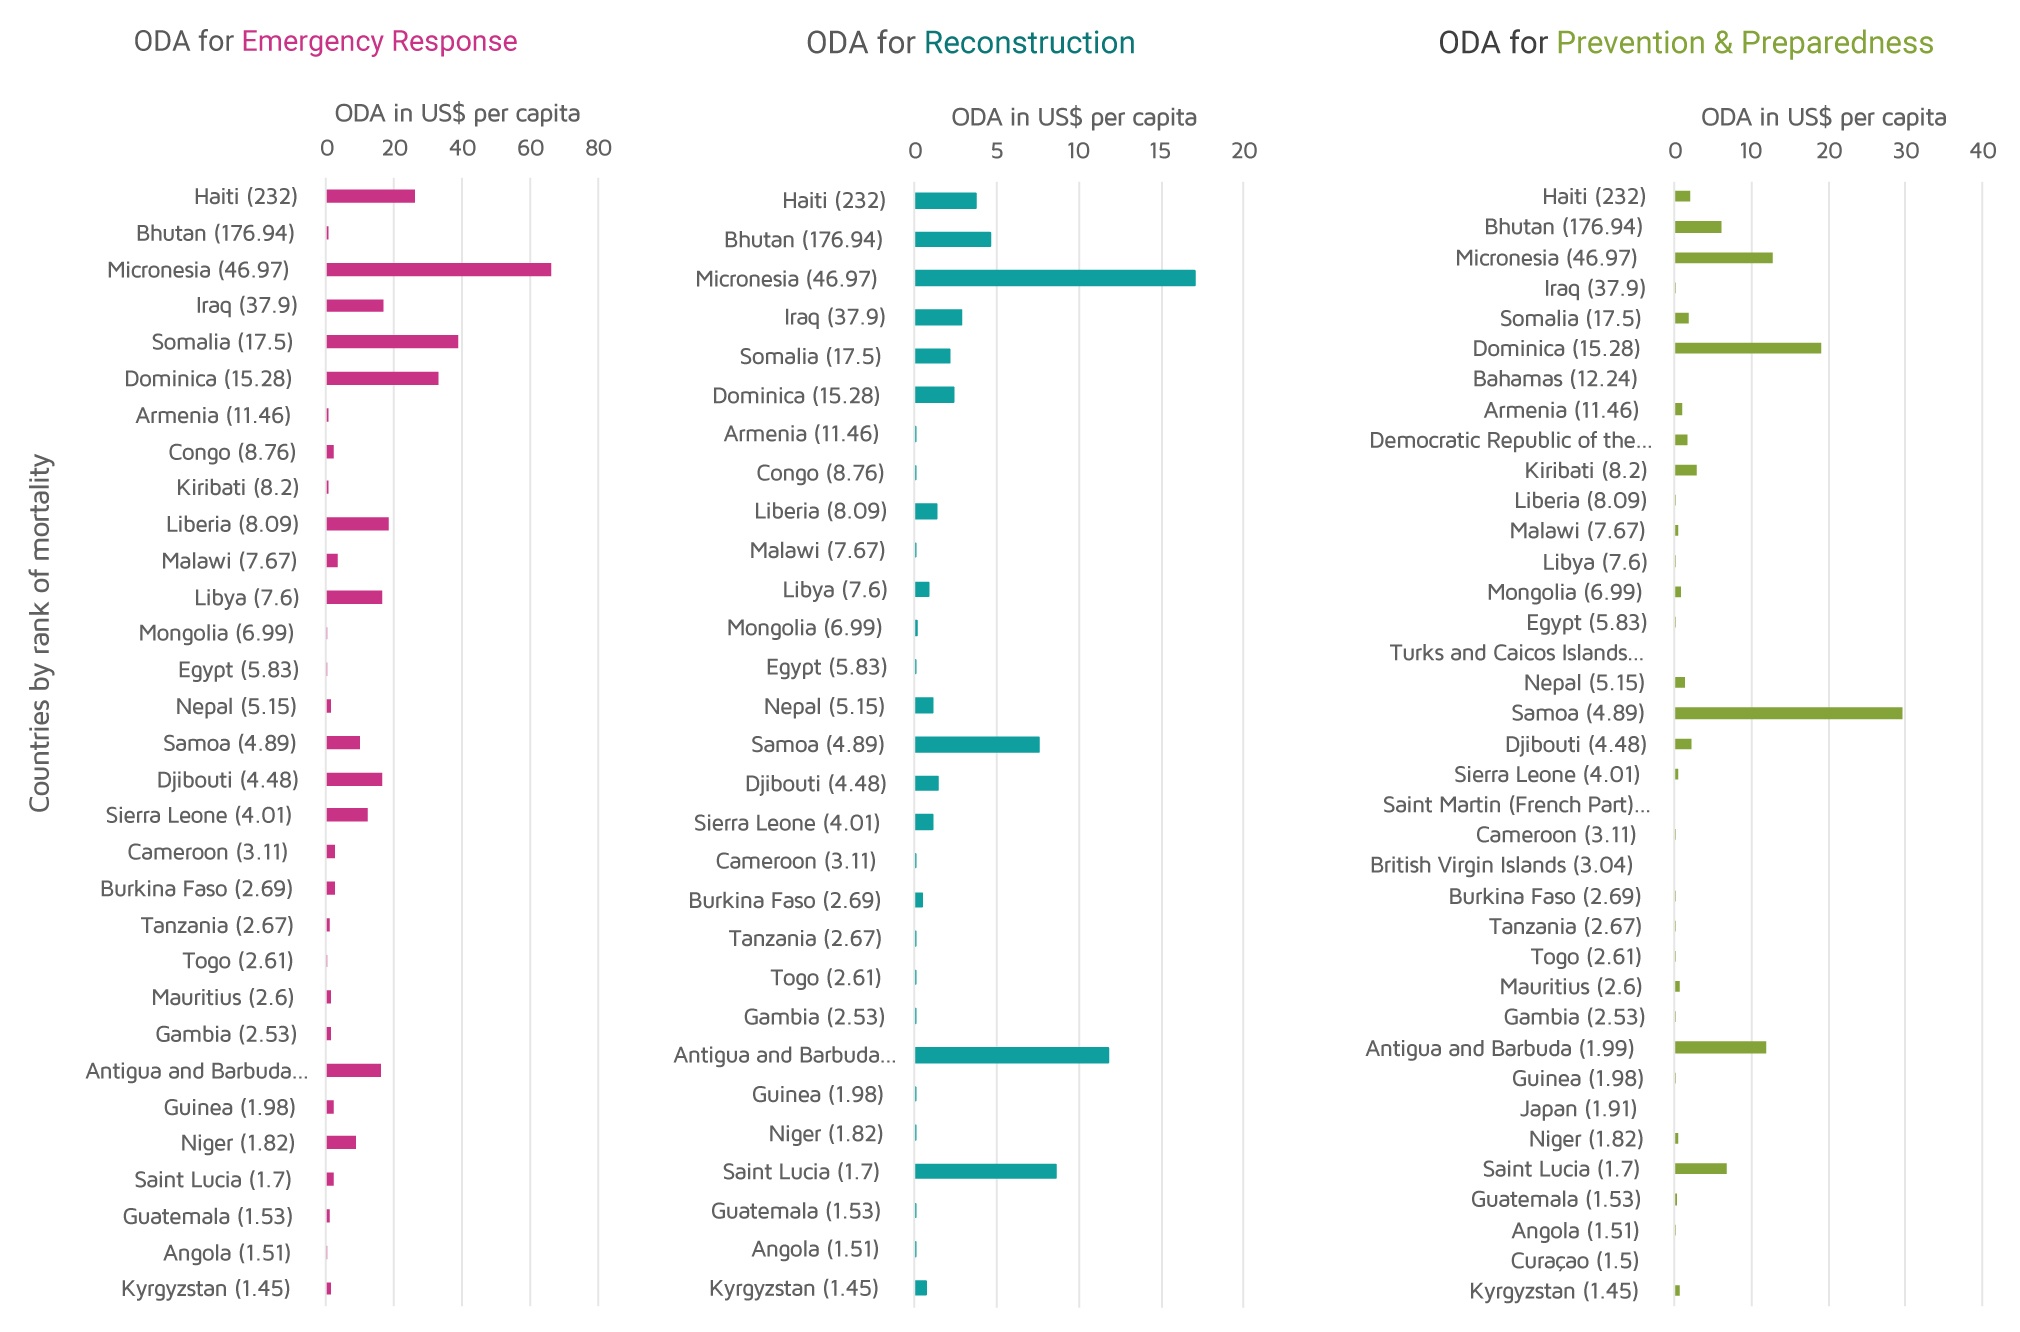 Comparison of ODA against mortality